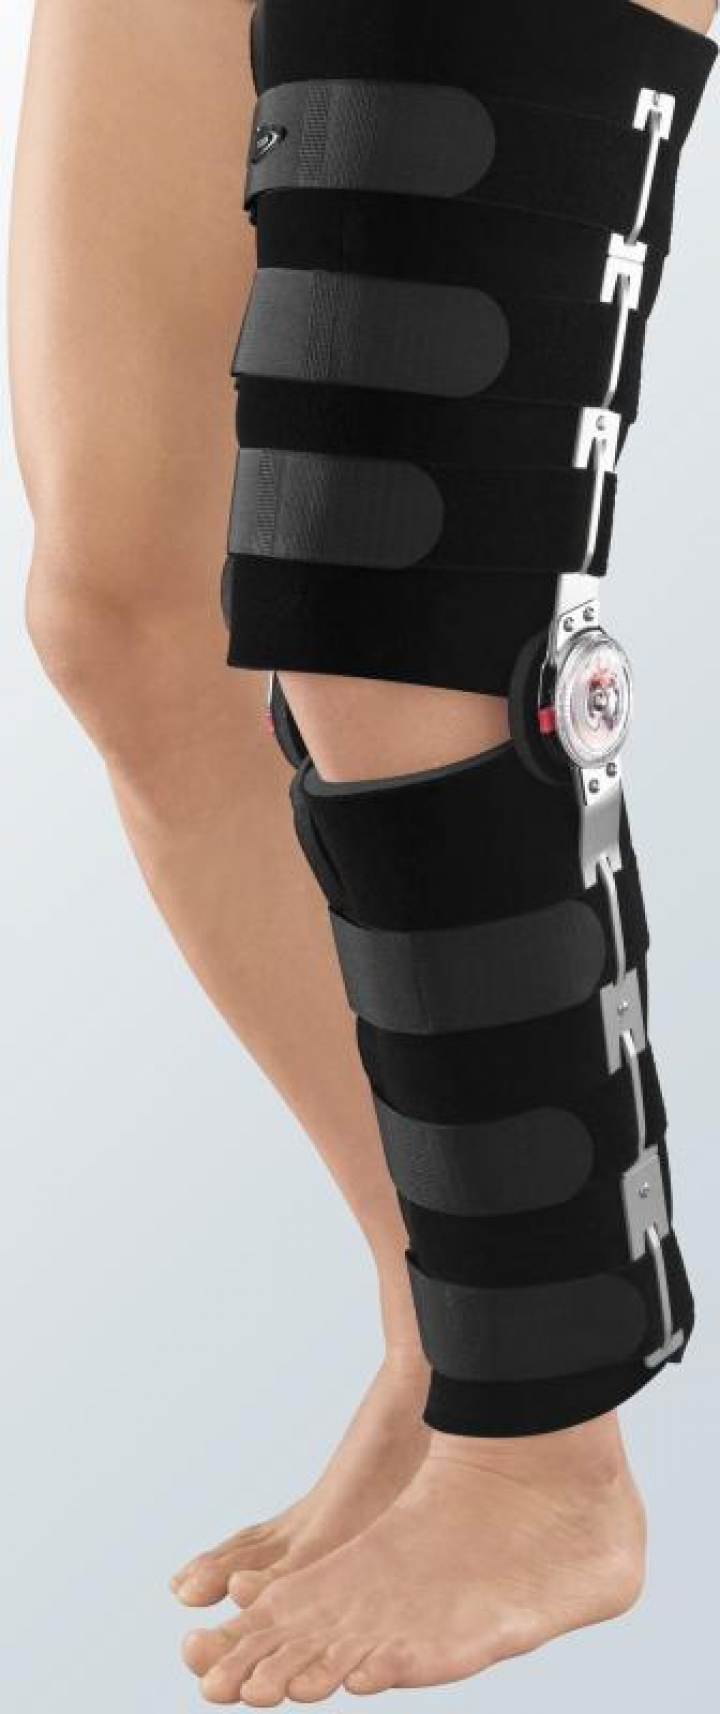 Tala ortótese para imobilização e reabilitação de joelho com regulação de ajuste rápido de flexão e extensão Protect.Rom